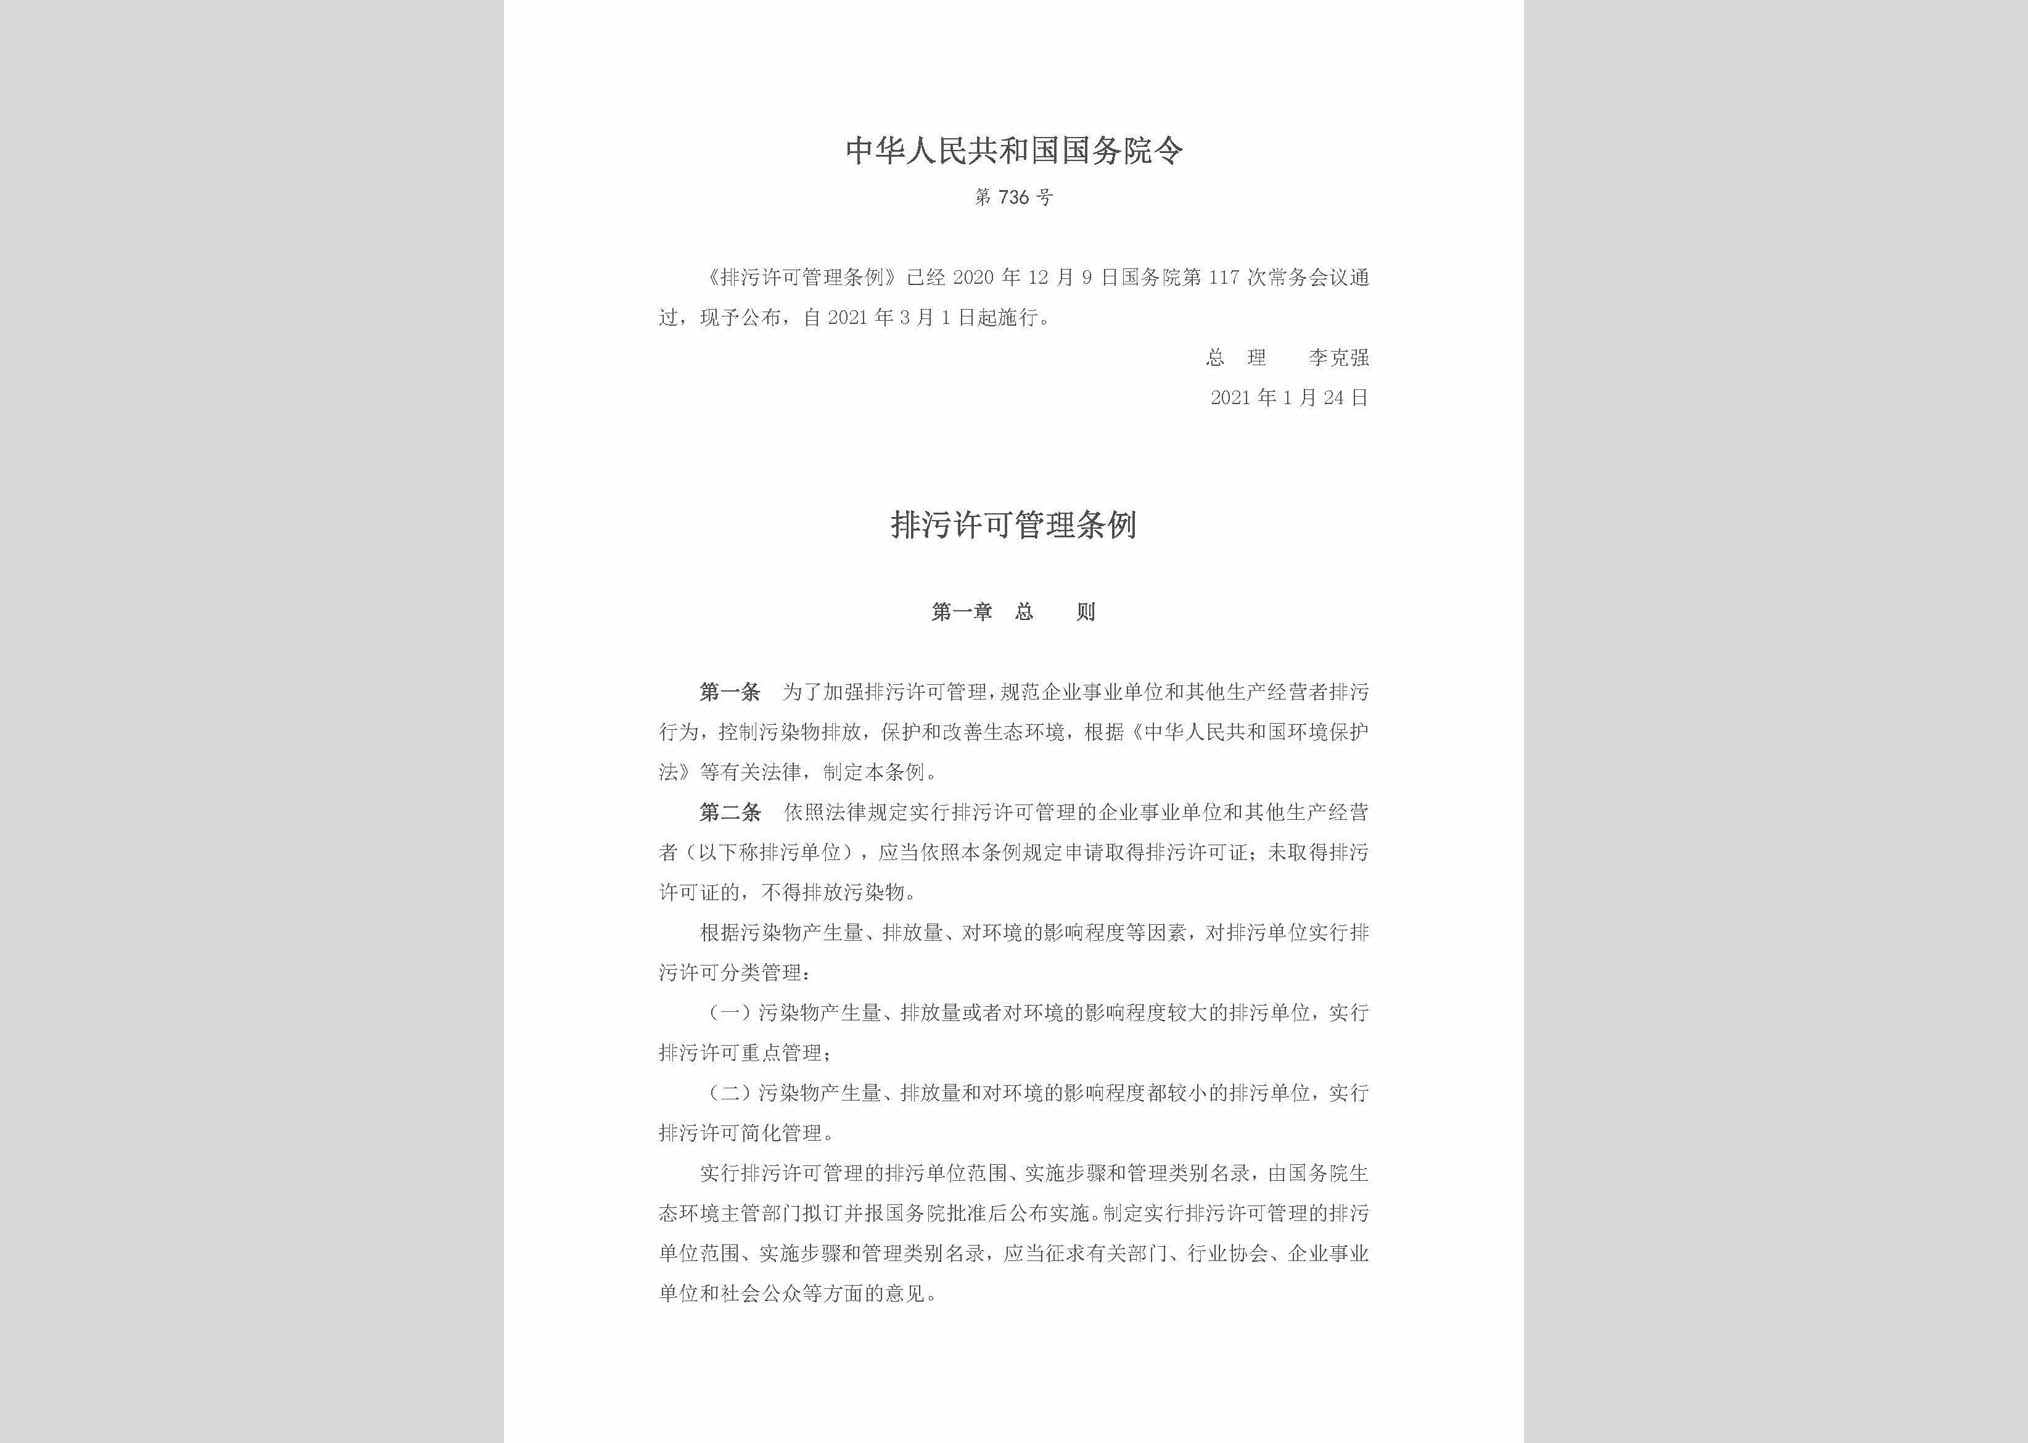 中华人民共和国国务院令第736号：排污许可管理条例